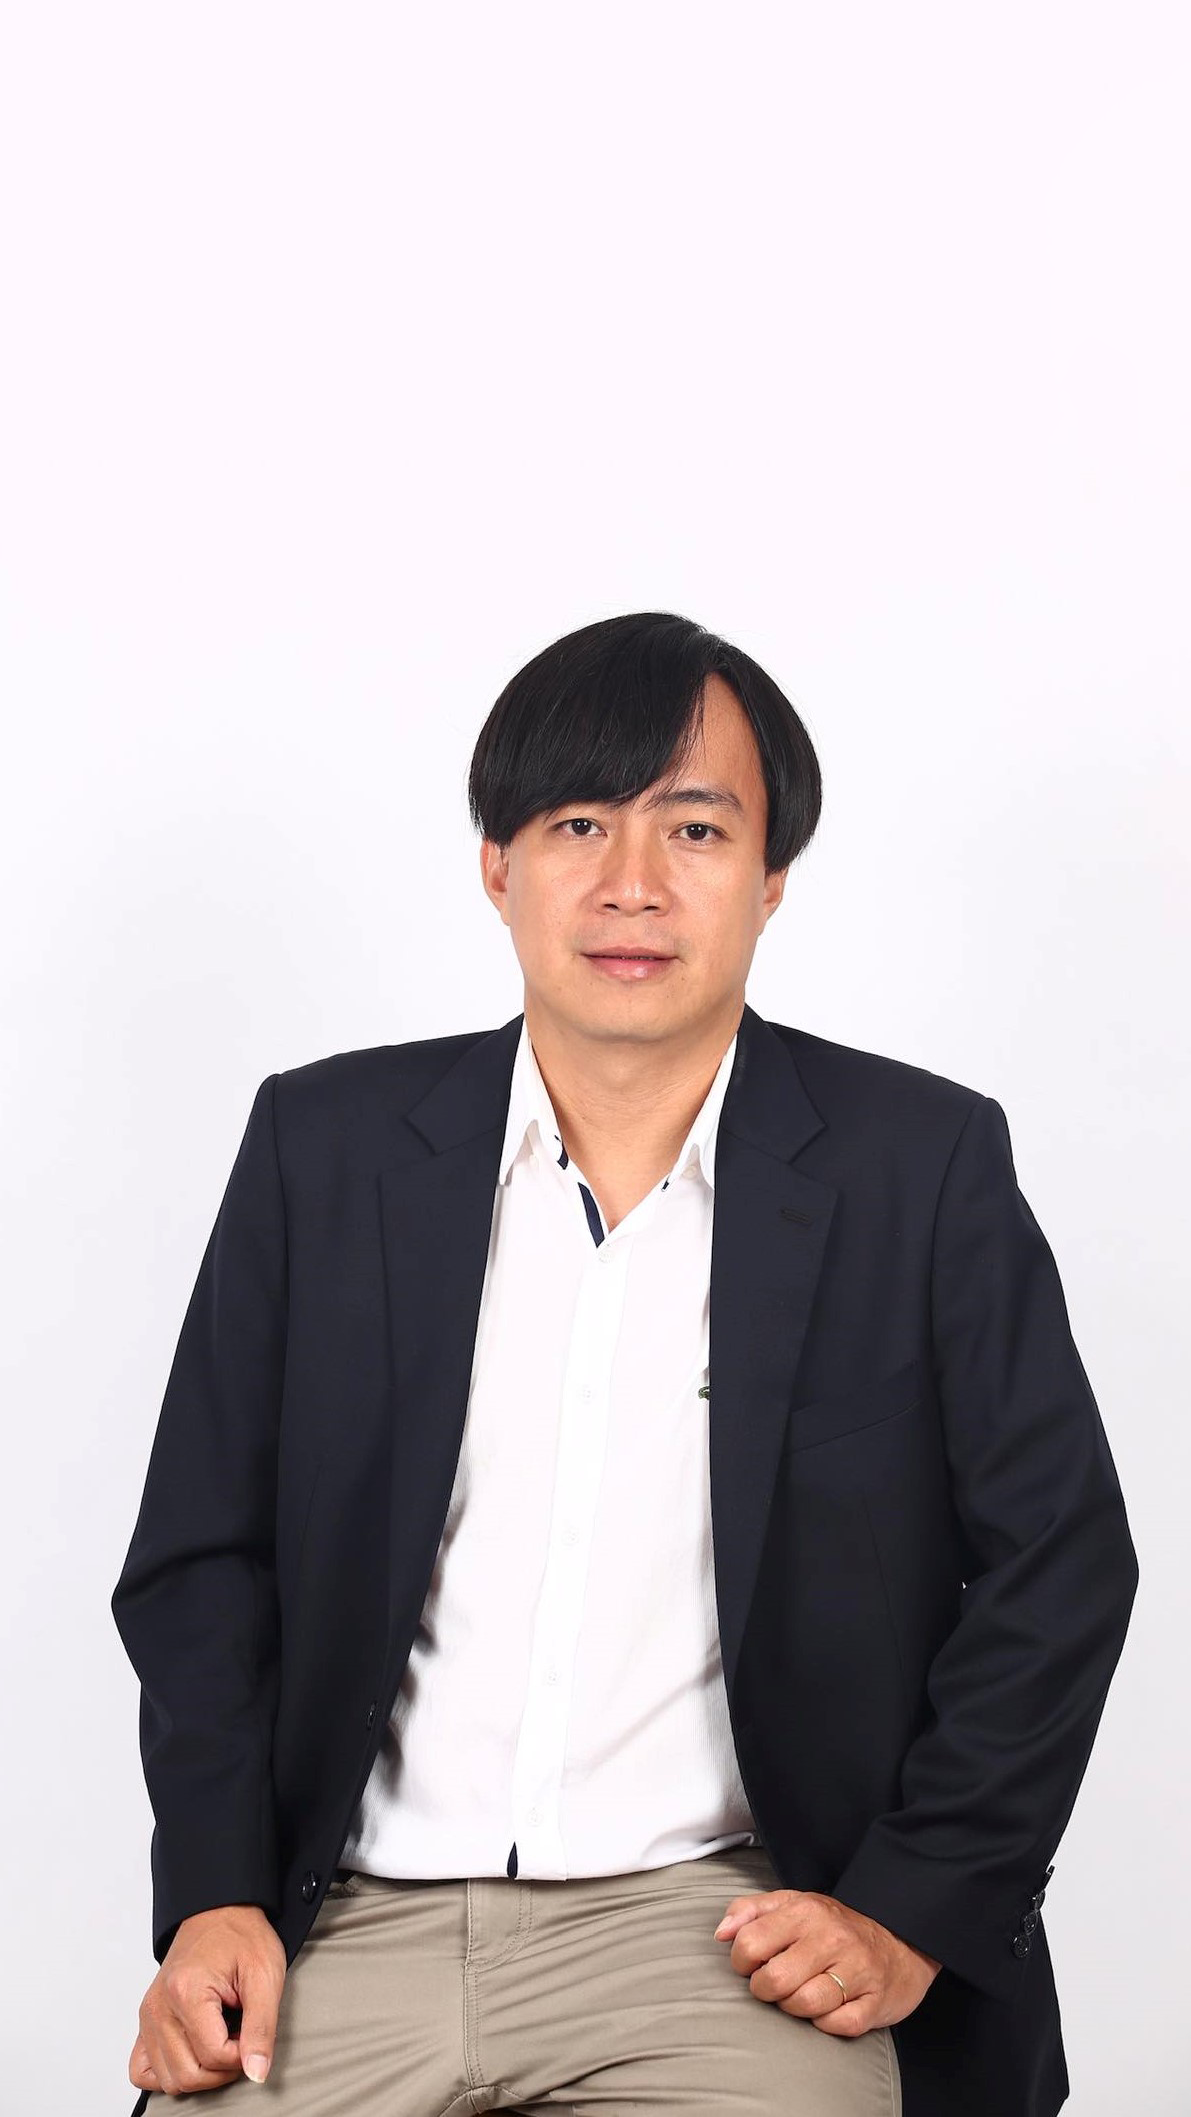 Mr.Trần Khánh Quang